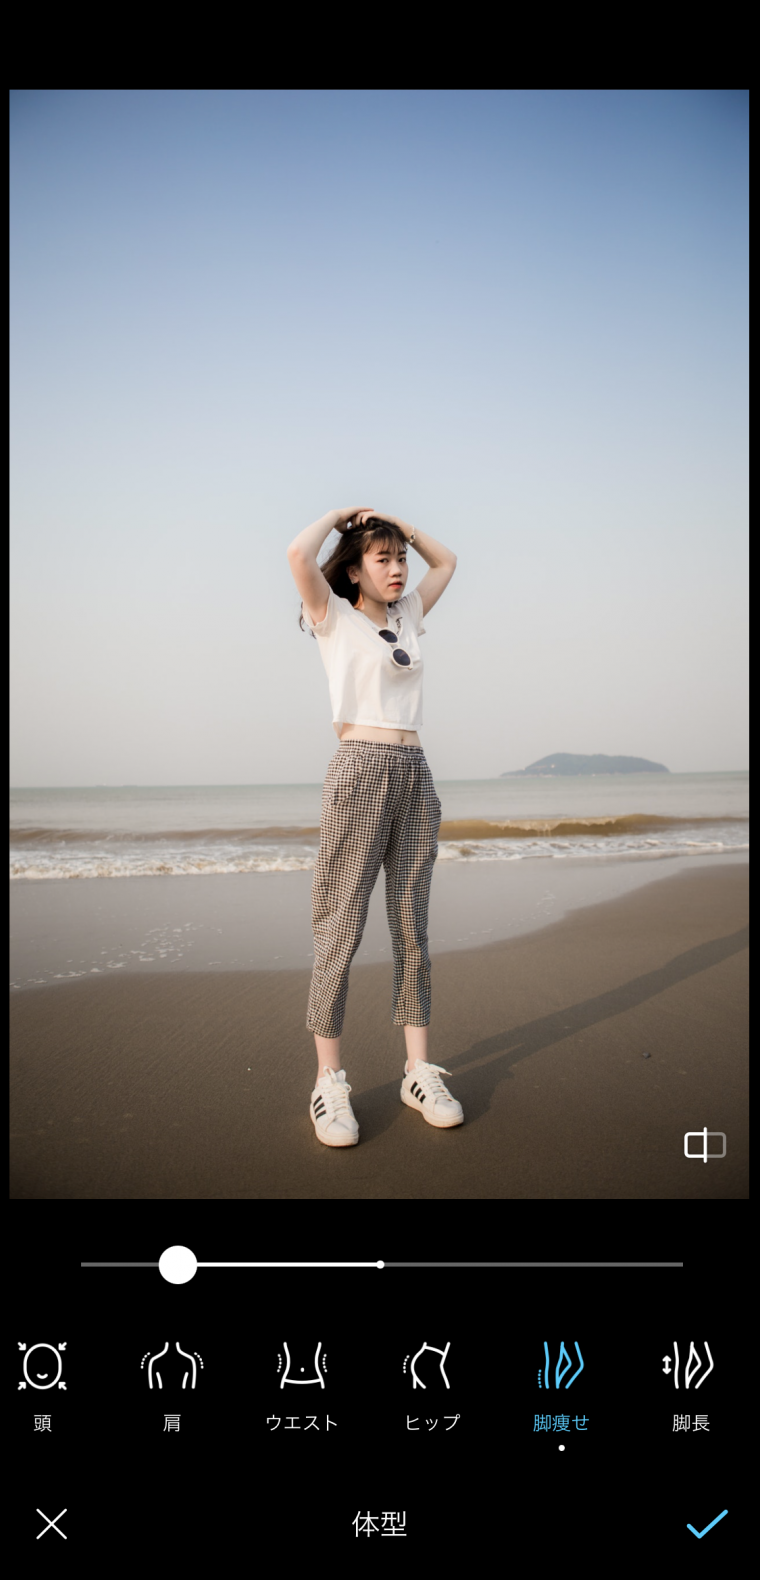 韓国女性のような脚長に 足を細くする加工アプリ3選 Appliv